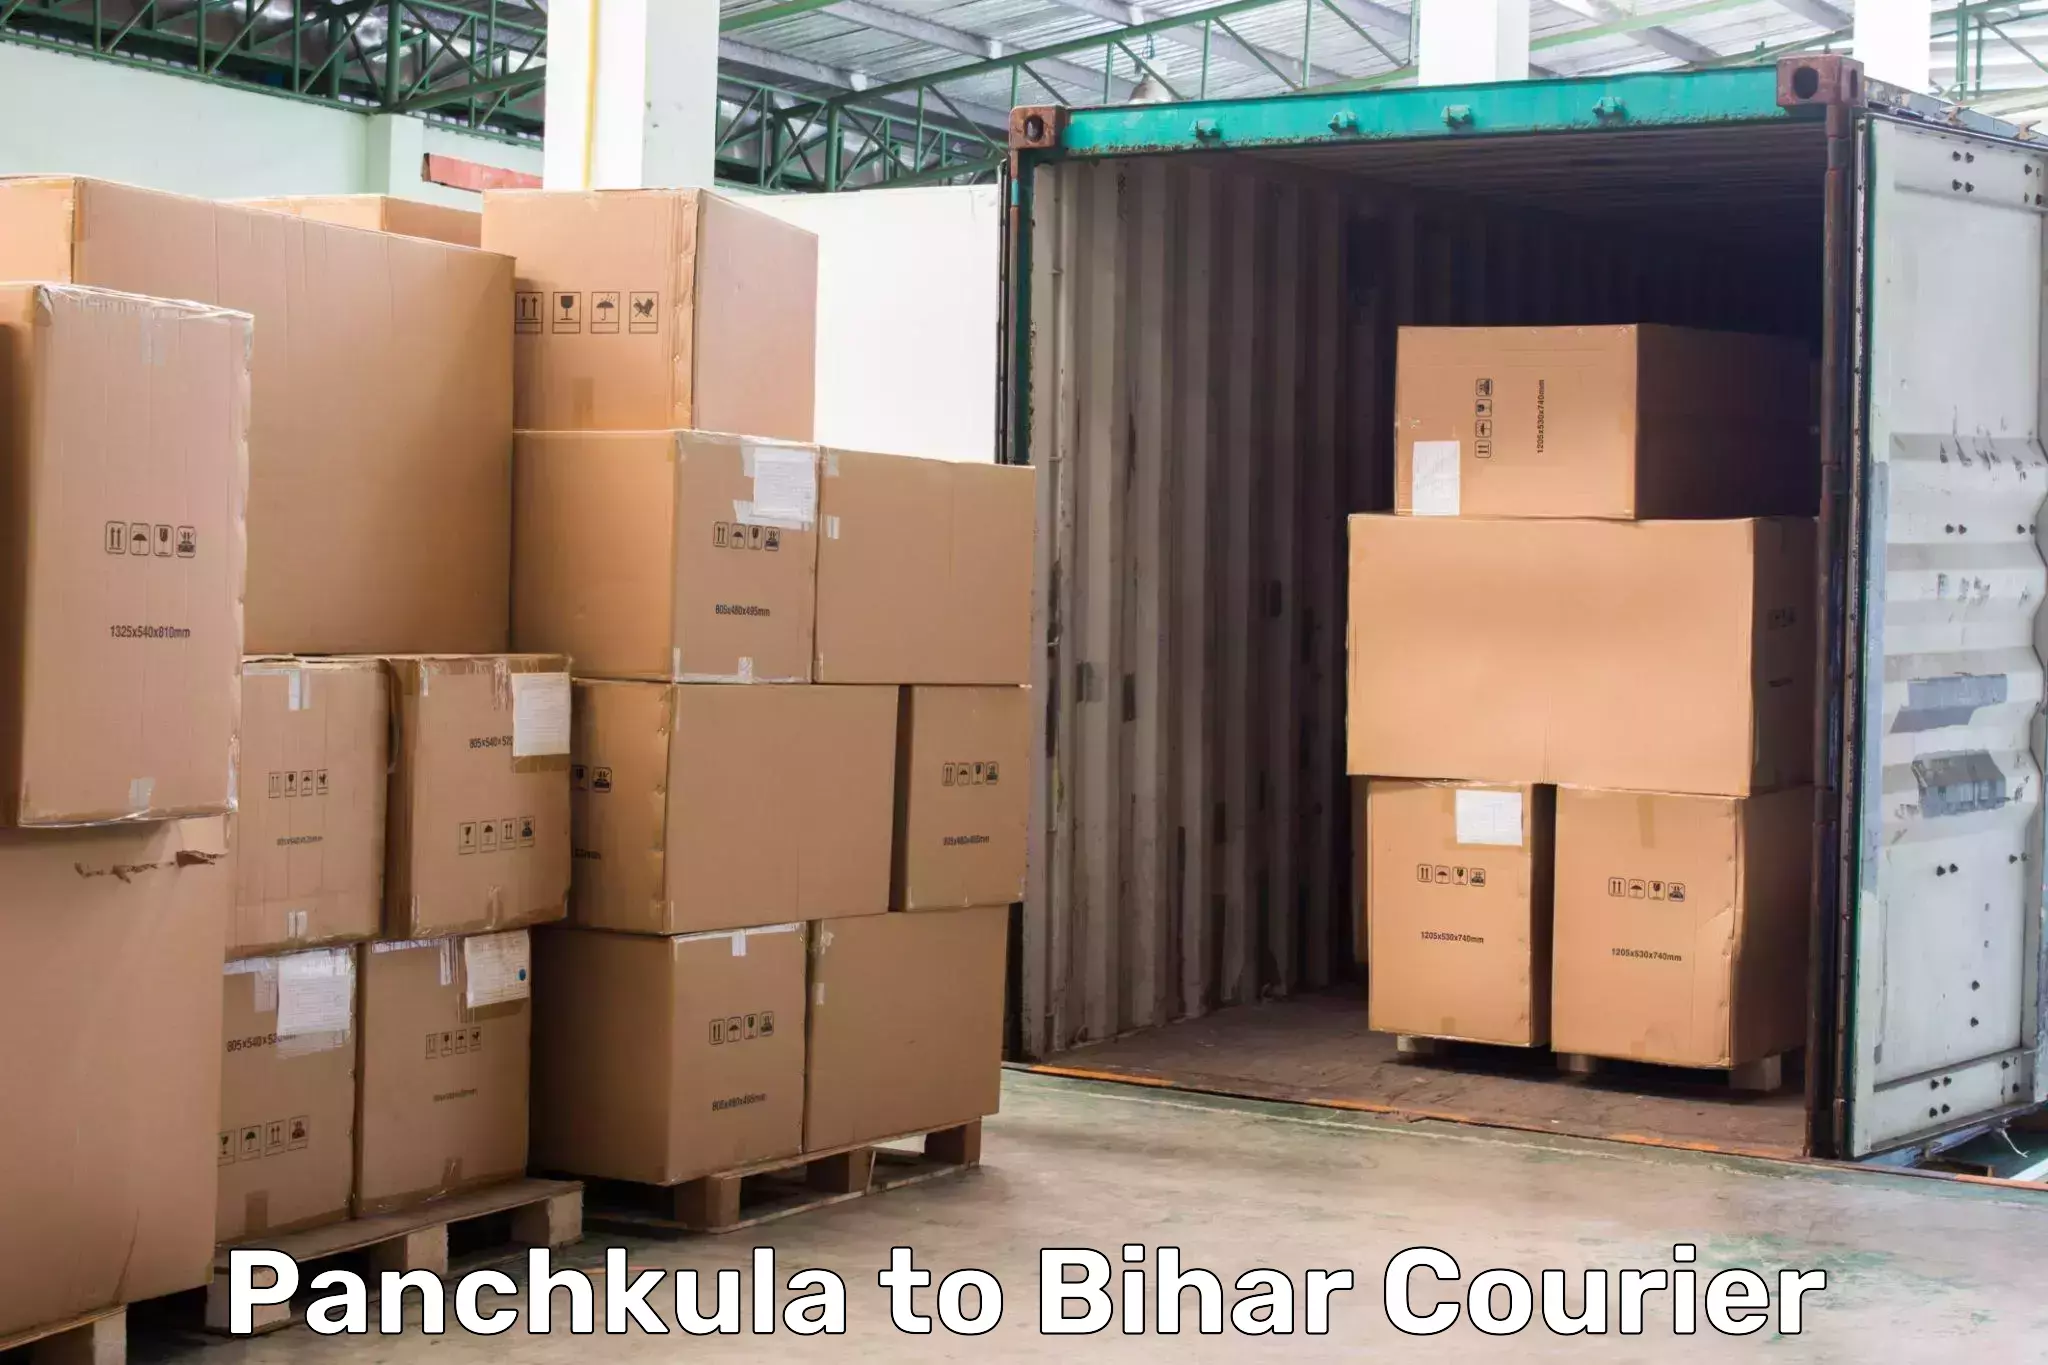 Courier service partnerships Panchkula to Dinara